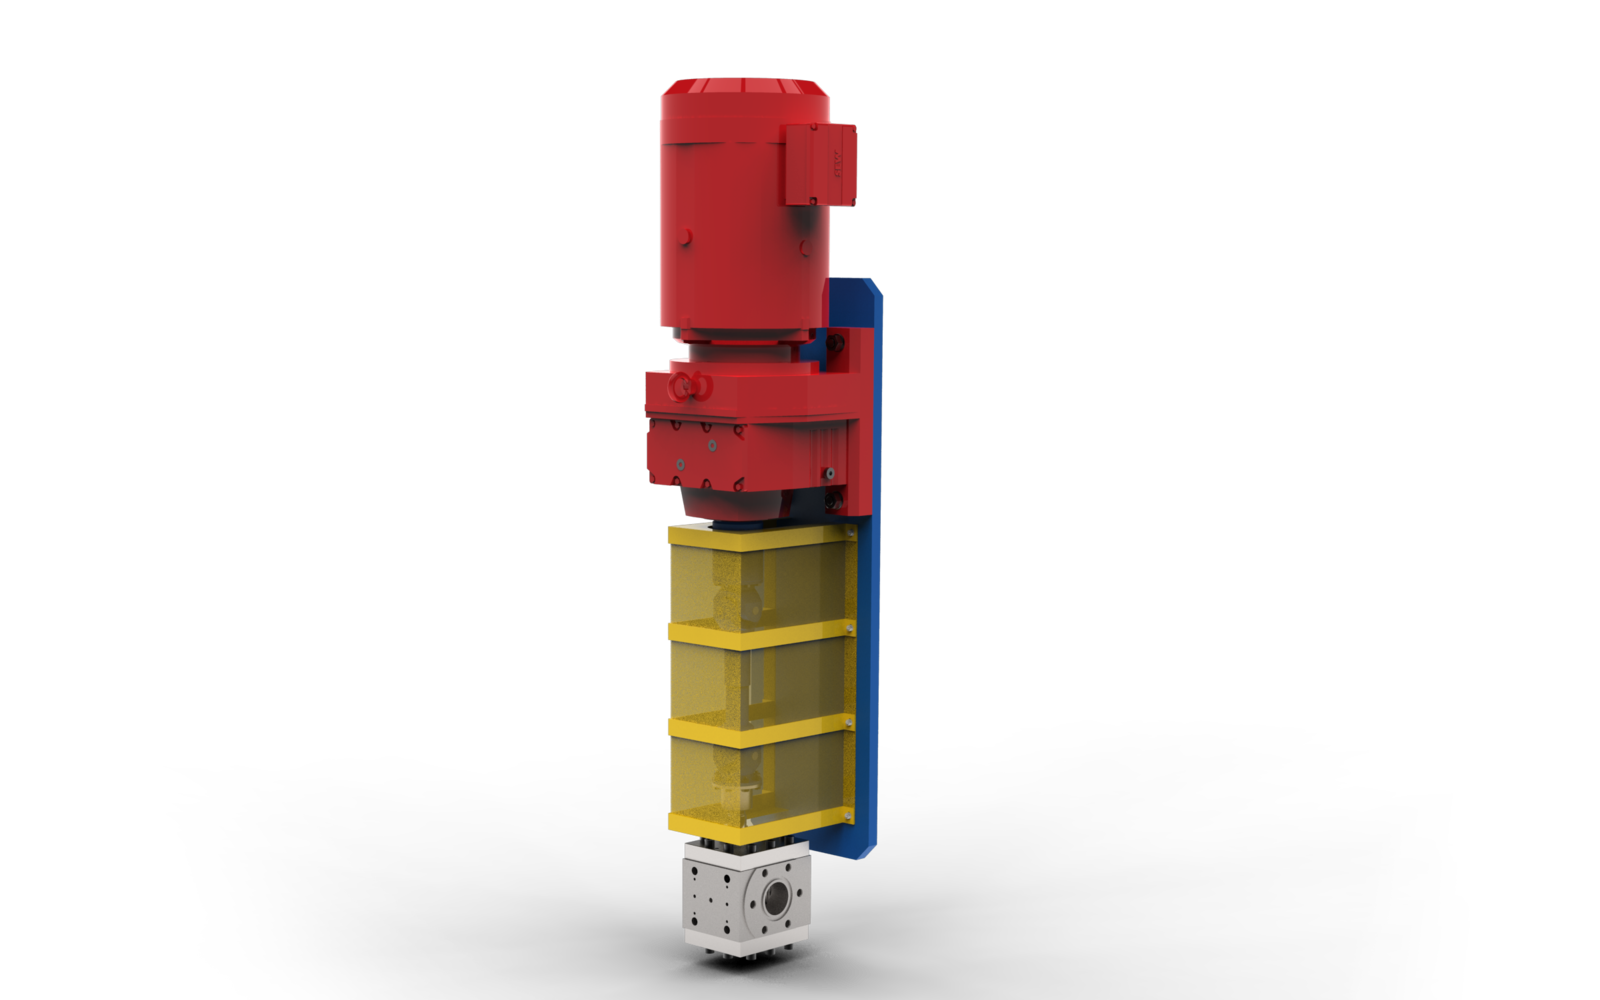 Bomba de fusión con eje cardán, caja de engranajes y motor en instalación en fila vertical